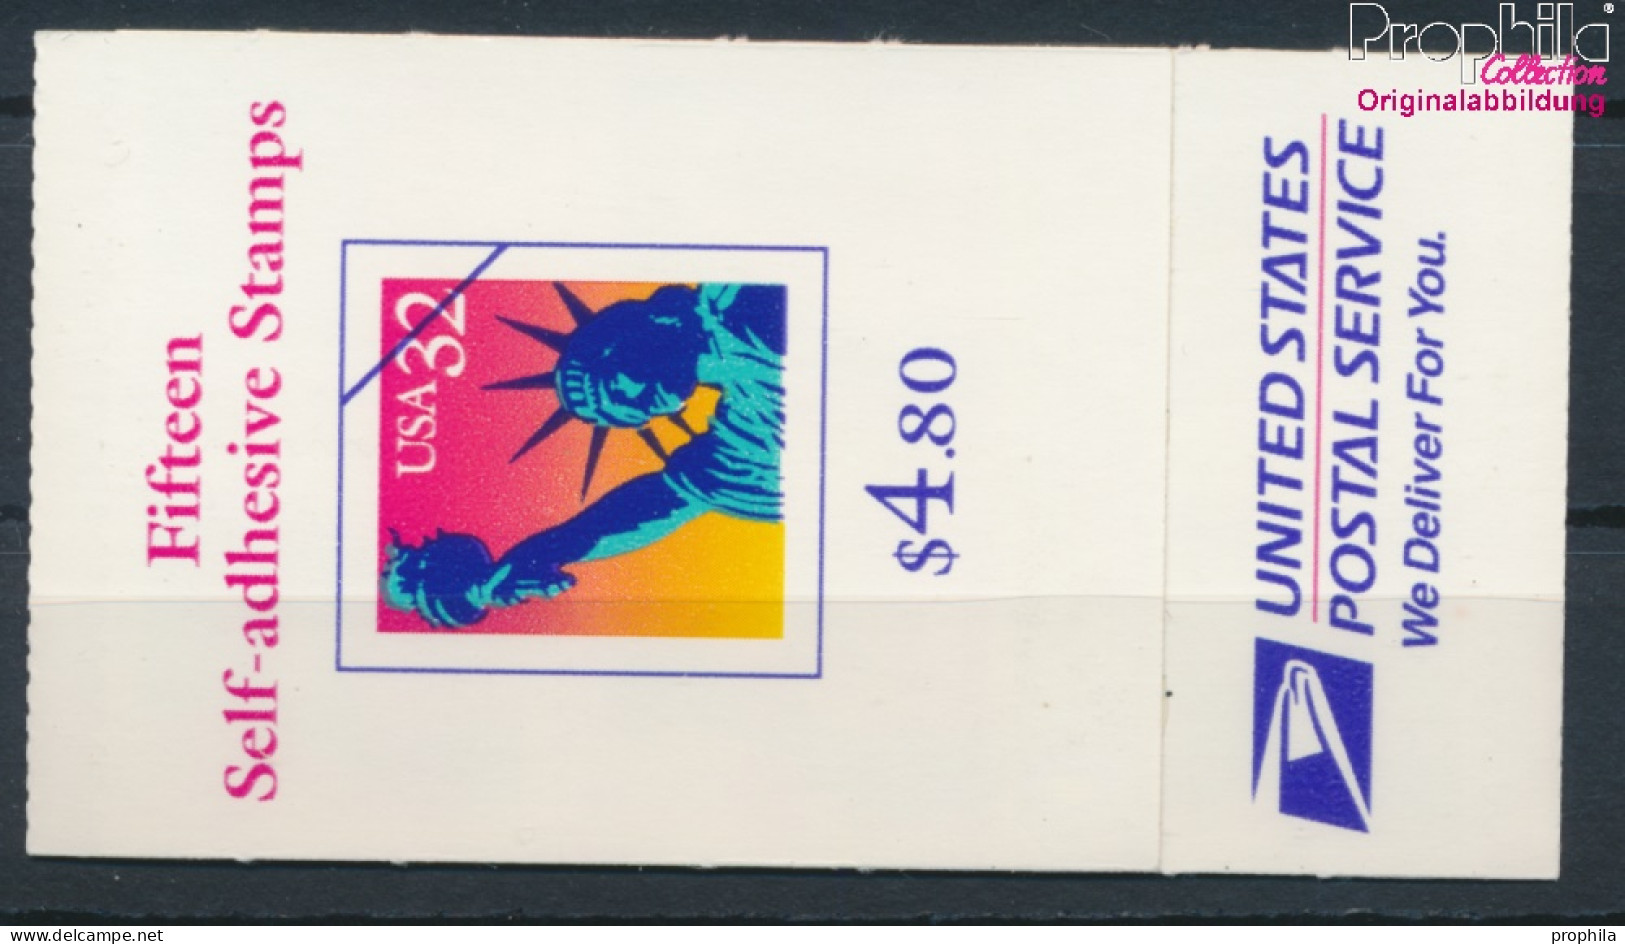 USA MH218 (kompl.Ausg.) Postfrisch 1997 Freiheitsstatue (10348606 - Unused Stamps